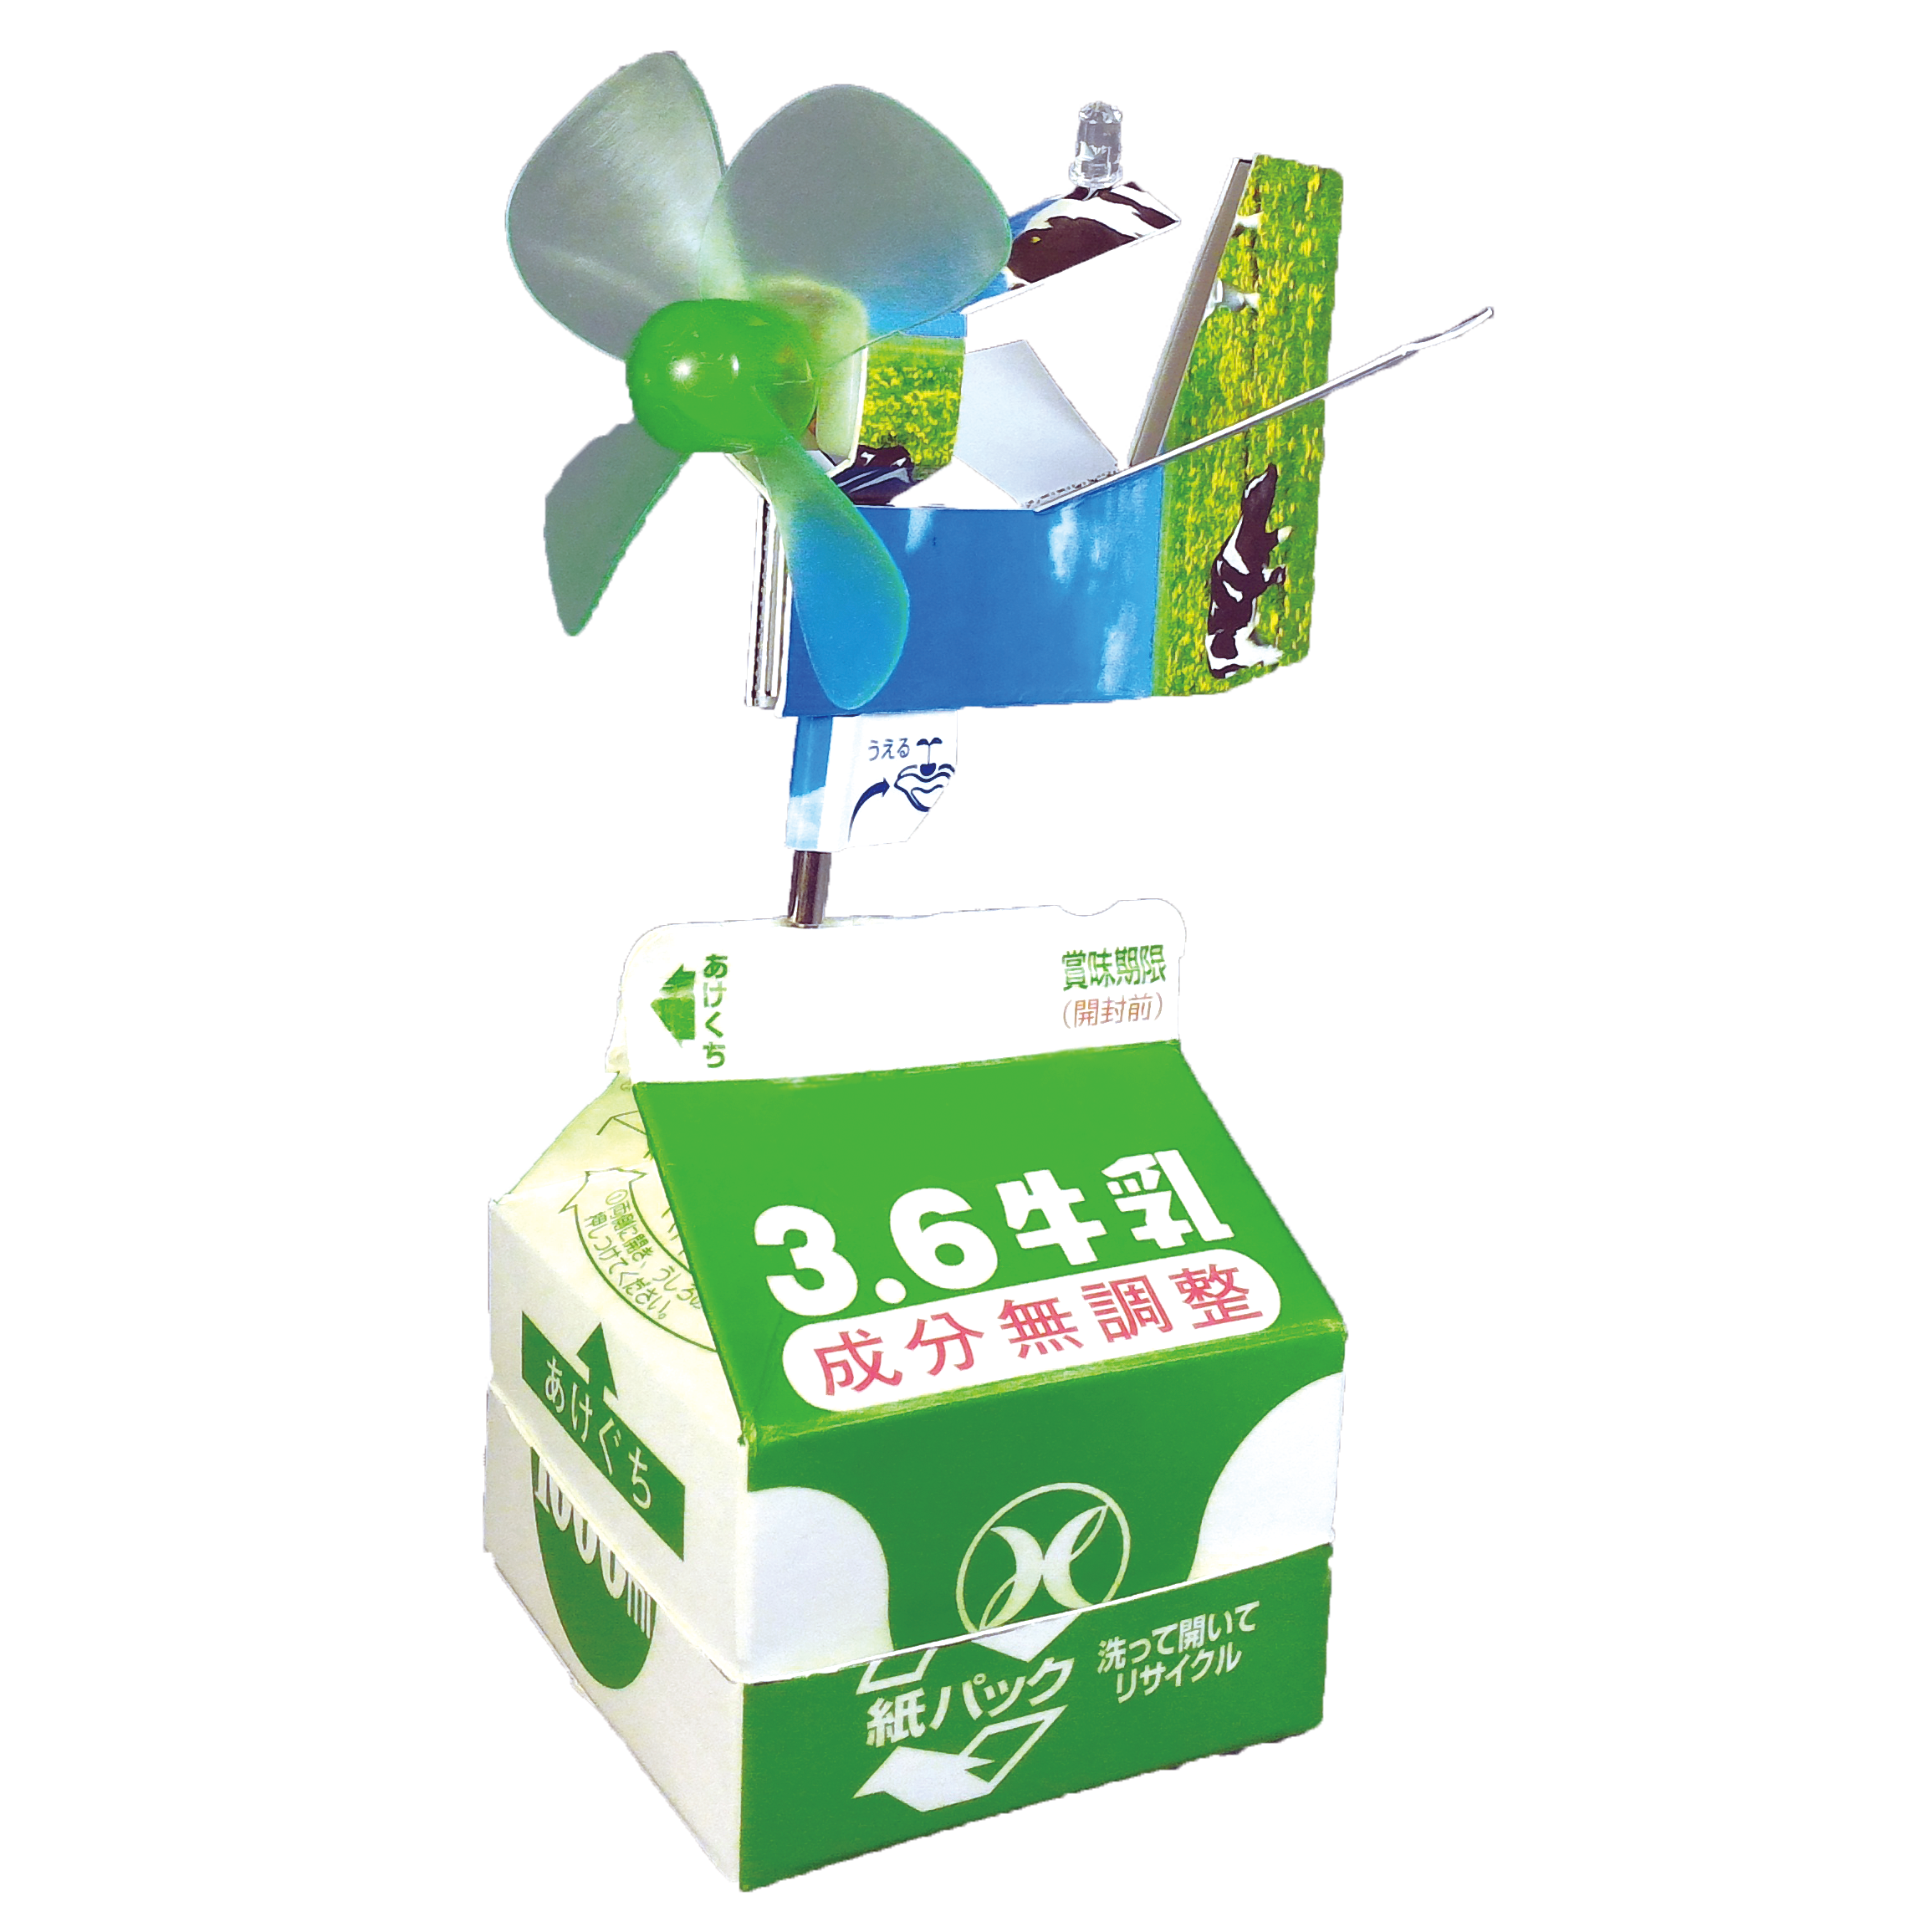 牛乳パック風力発電キット JS-6117 ]｜製品情報 エレキット